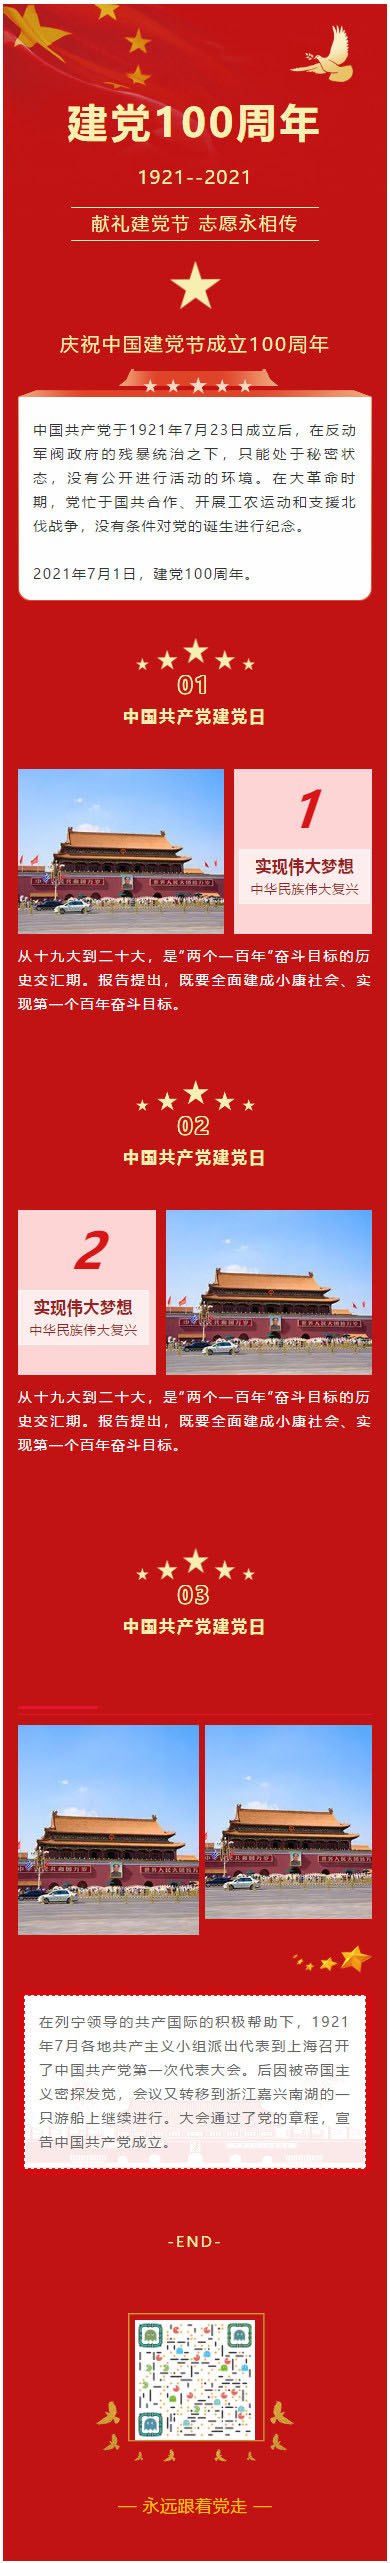 中国共产党建党100周年庆祝中国建党成立100周年建党节微信推文模板